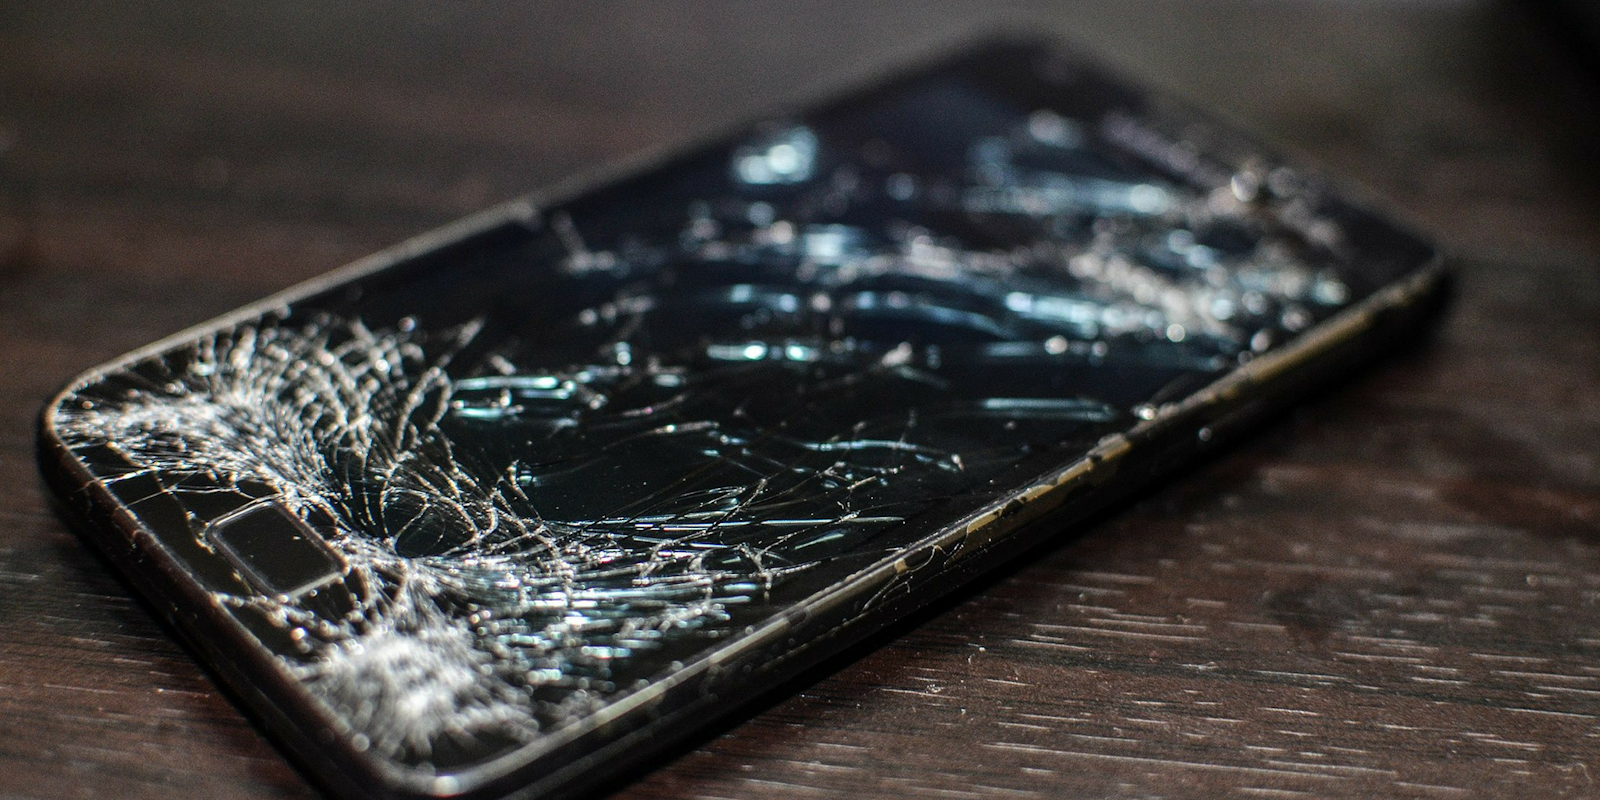 A broken phone screen